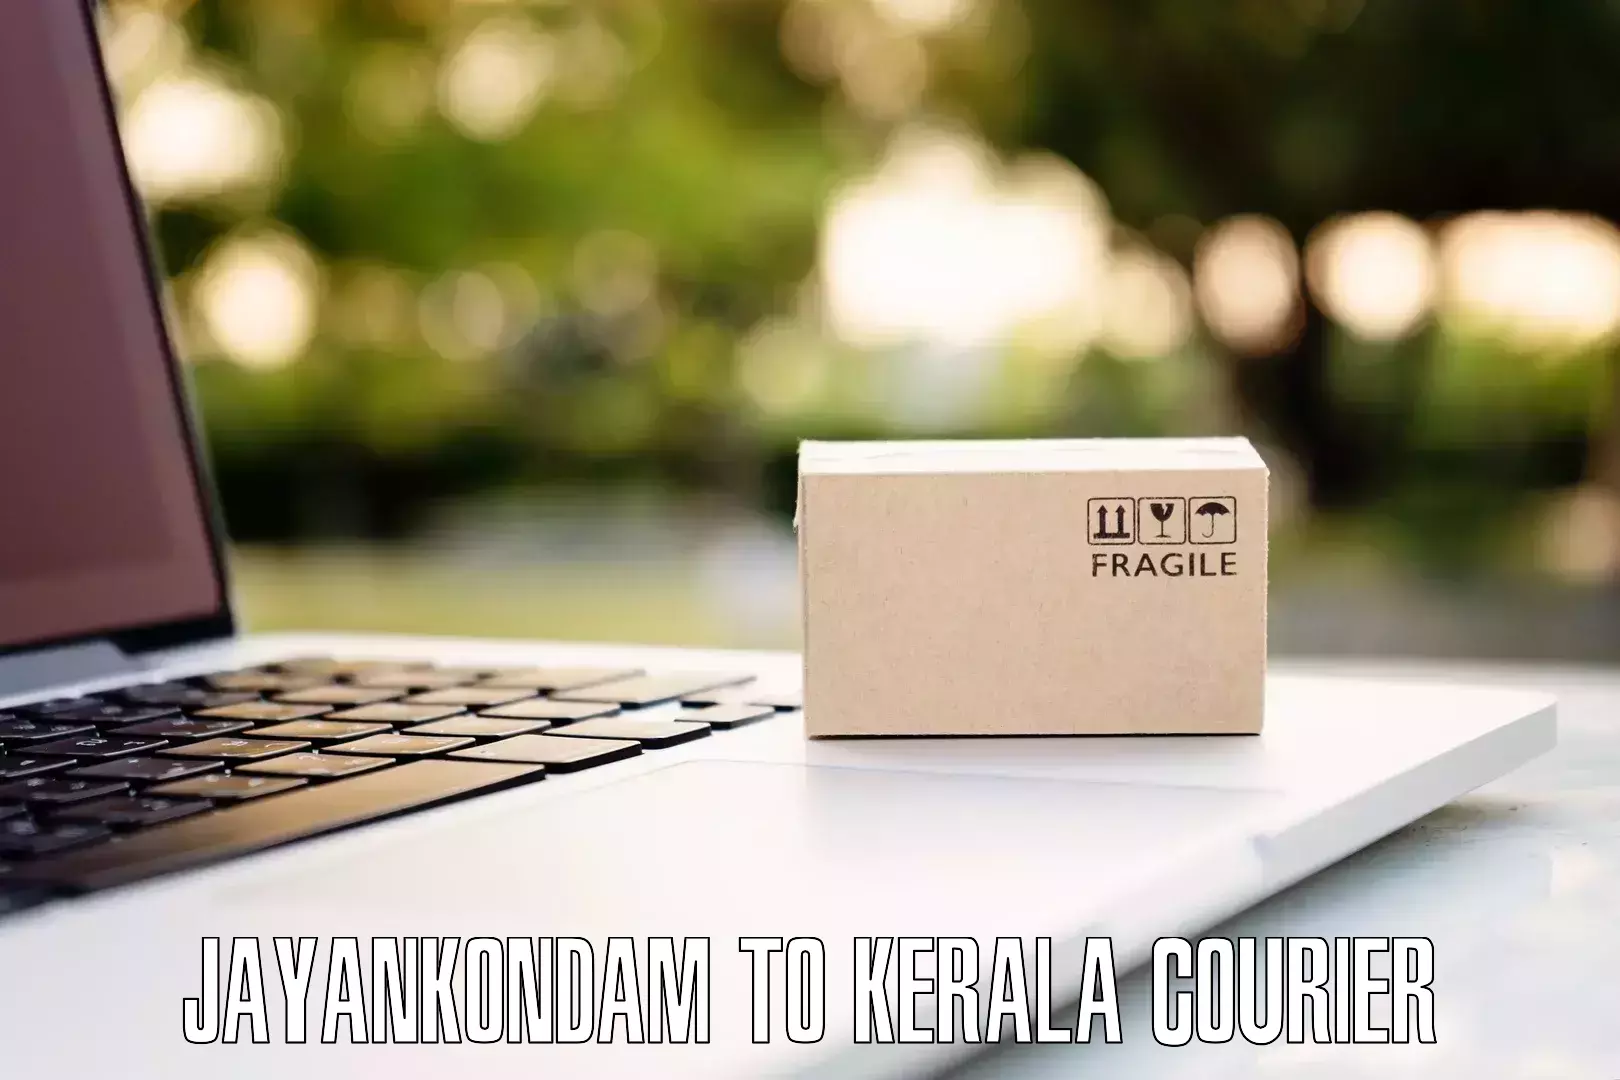 Online luggage shipping booking Jayankondam to Cochin